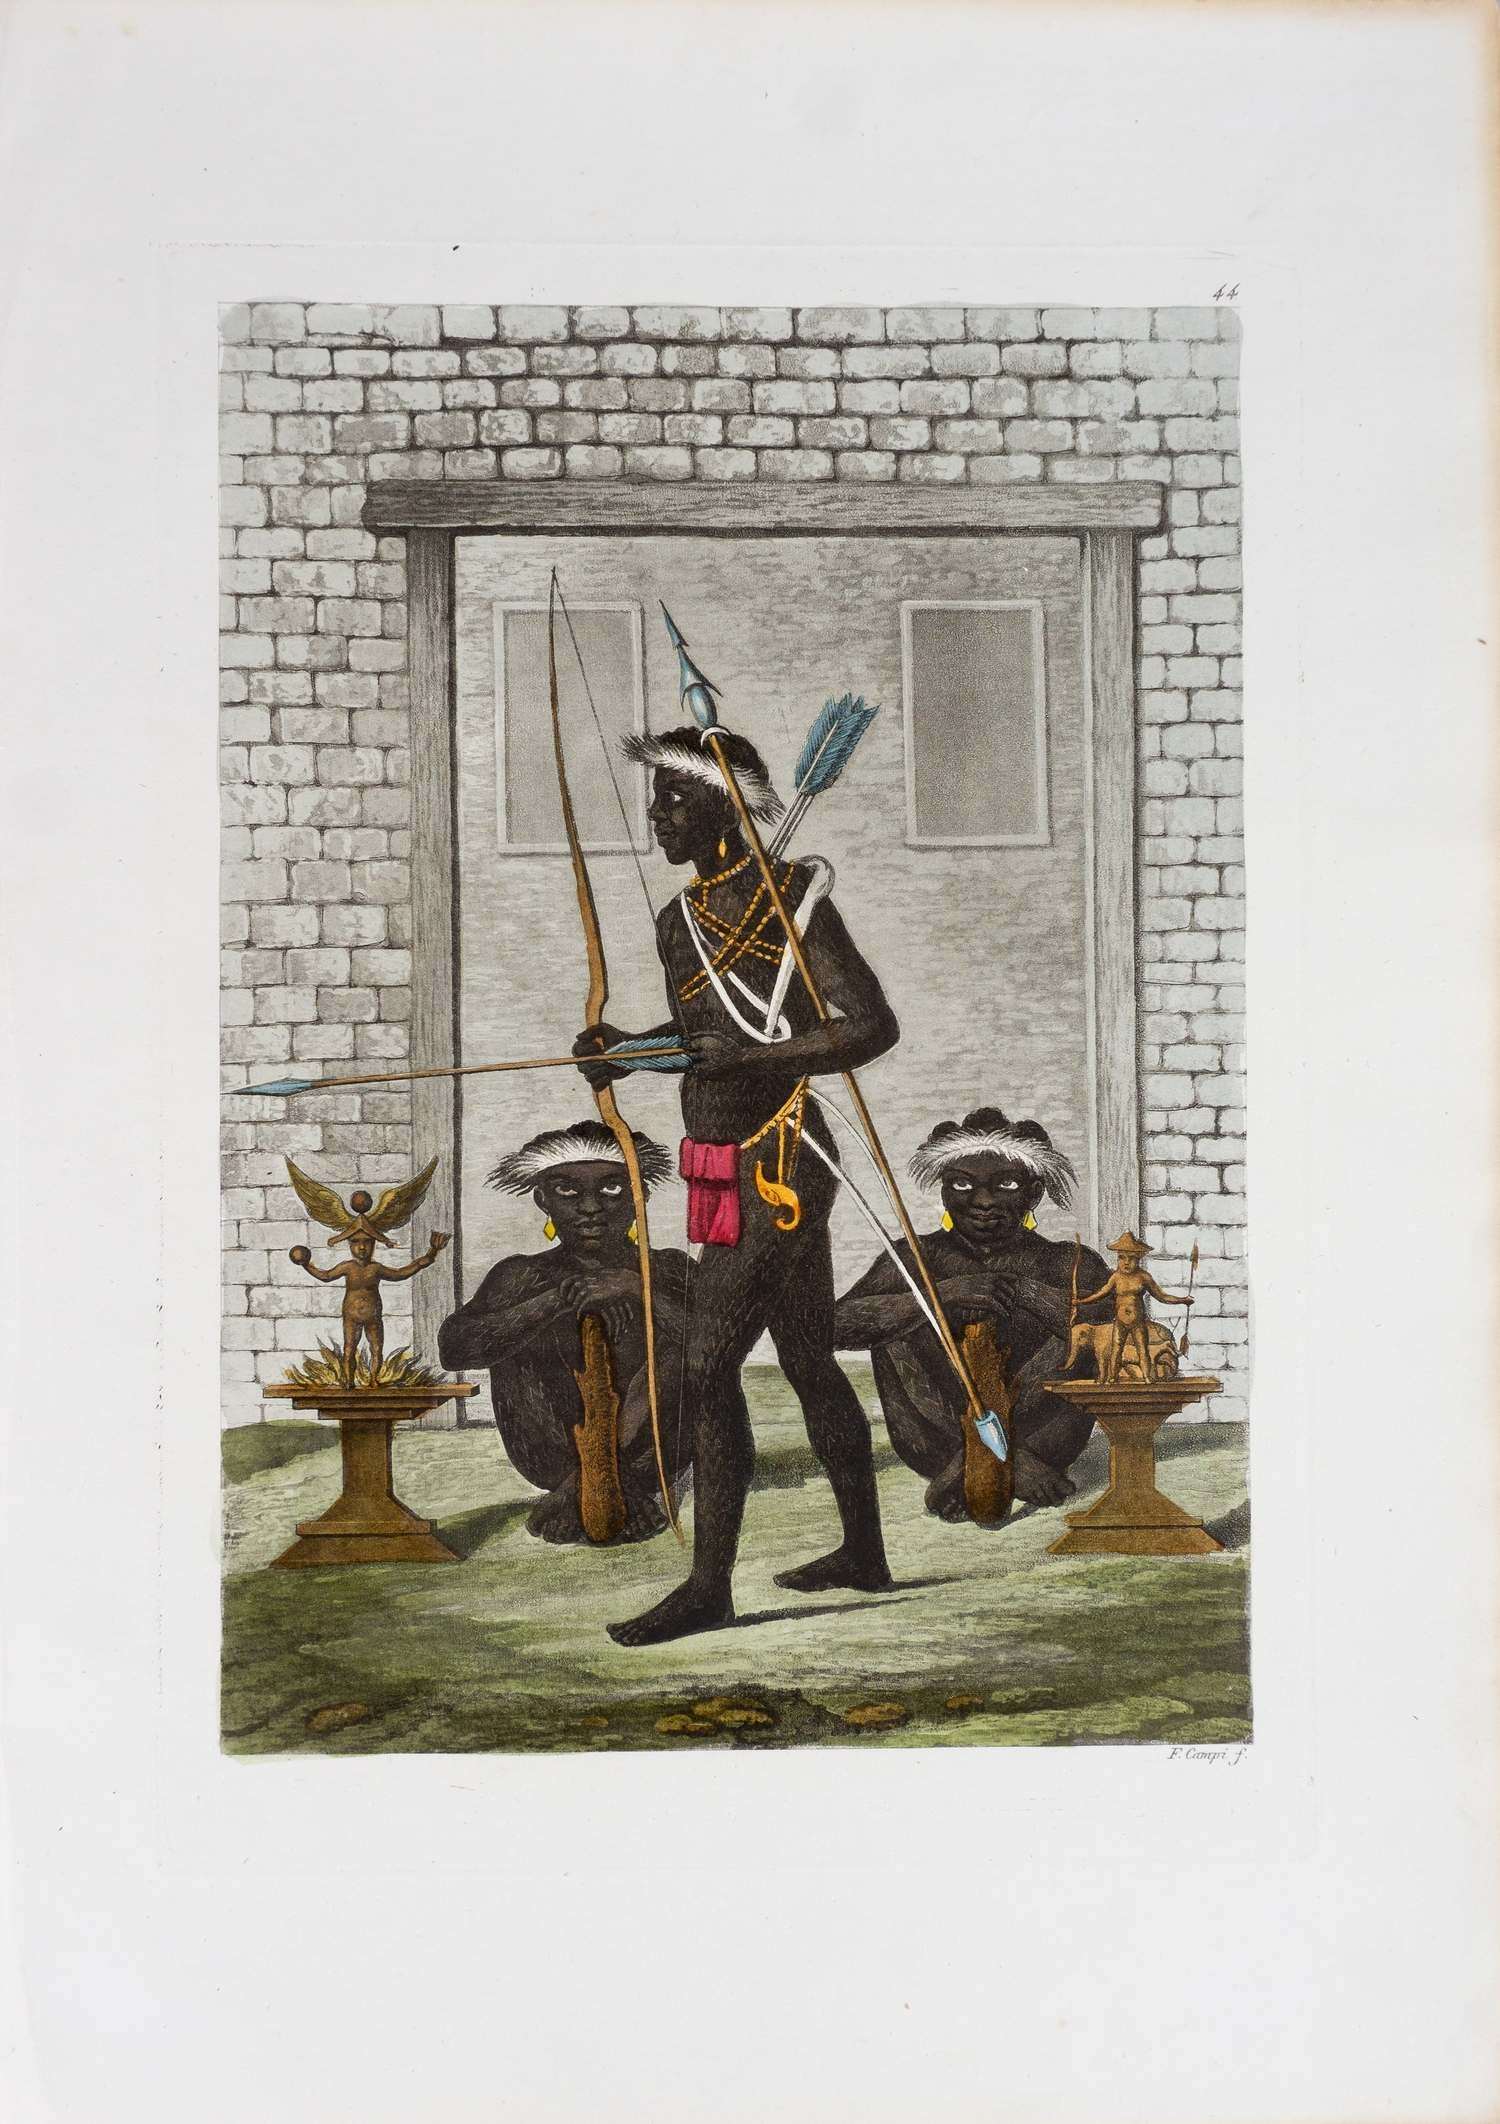 Кампи Ф. Воины племени конго охраняют дворец правителя. 1820-е годы.